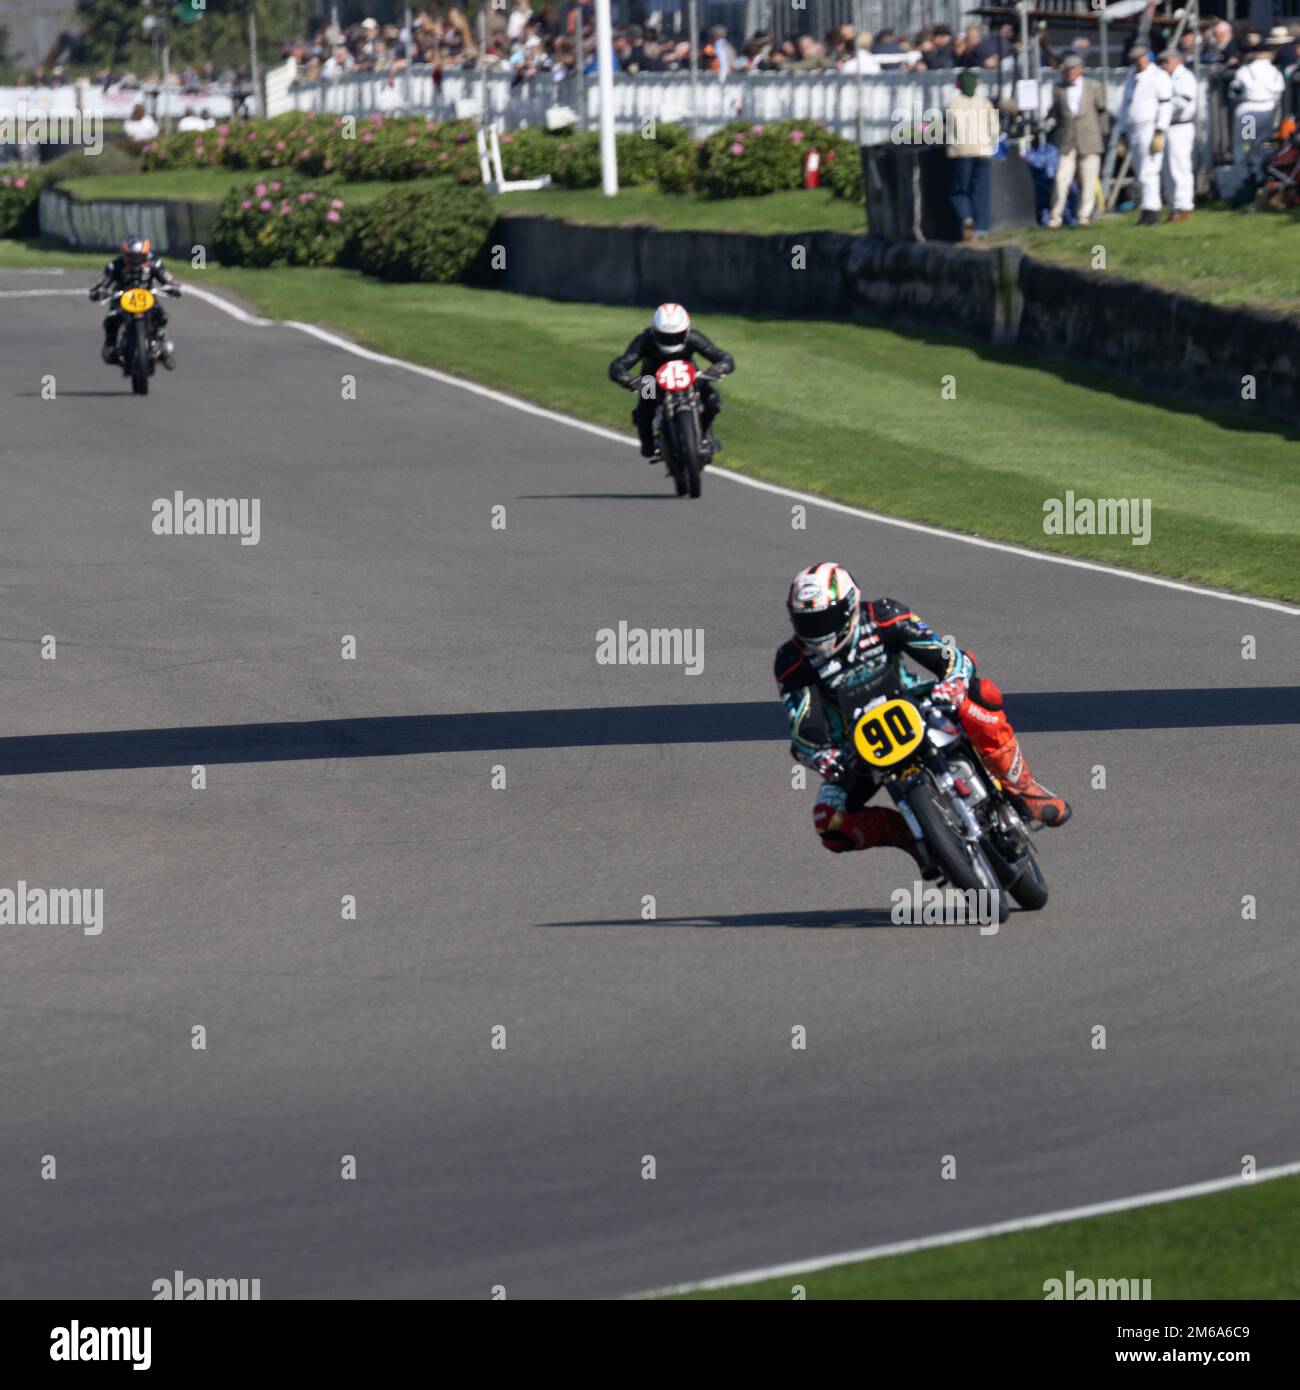 La moto n.90 conduce altri due in curva alla Goodwood Revival 2022 Foto Stock